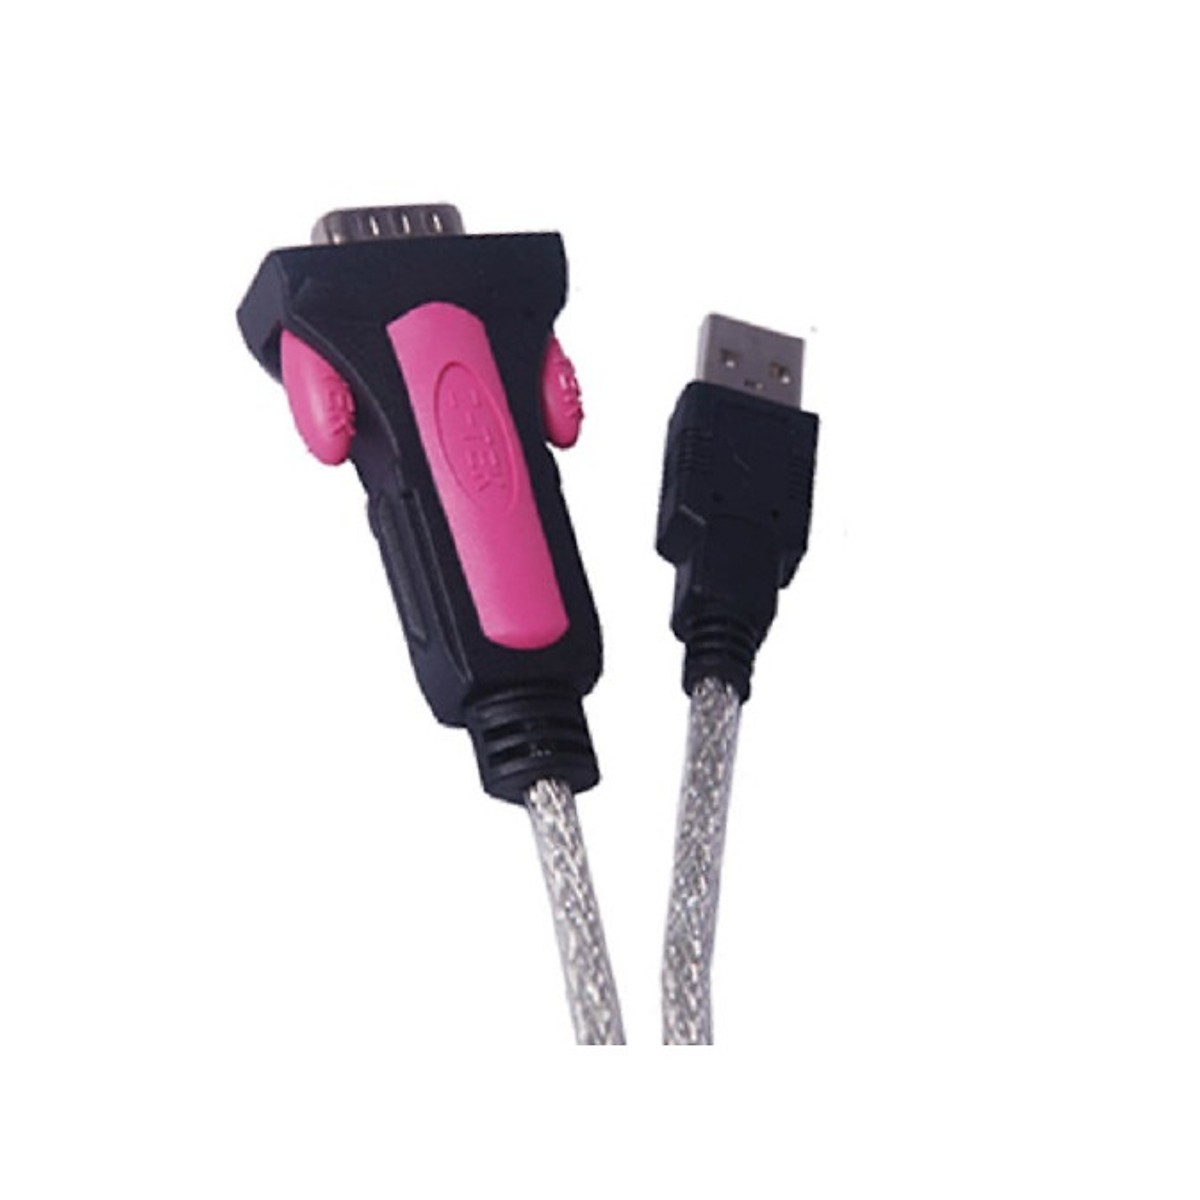 Cáp chuyển đổi USB to RS232 (USB to com) Z-TEK ZE533A - Hàng nhập khẩu